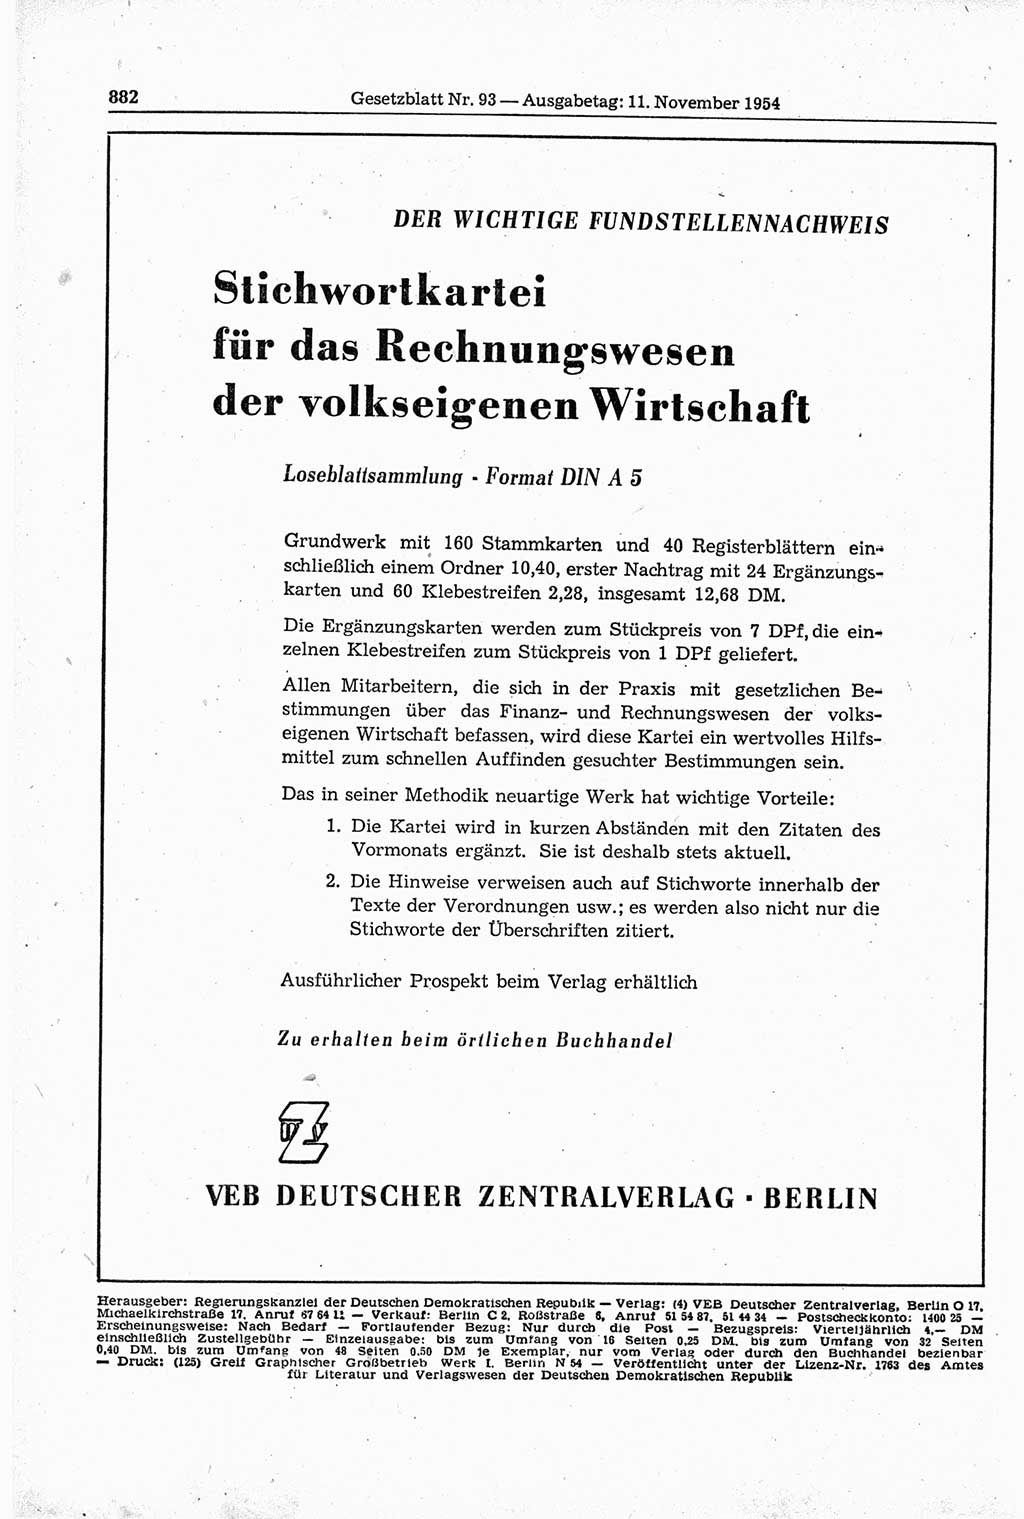 Gesetzblatt (GBl.) der Deutschen Demokratischen Republik (DDR) 1954, Seite 882 (GBl. DDR 1954, S. 882)